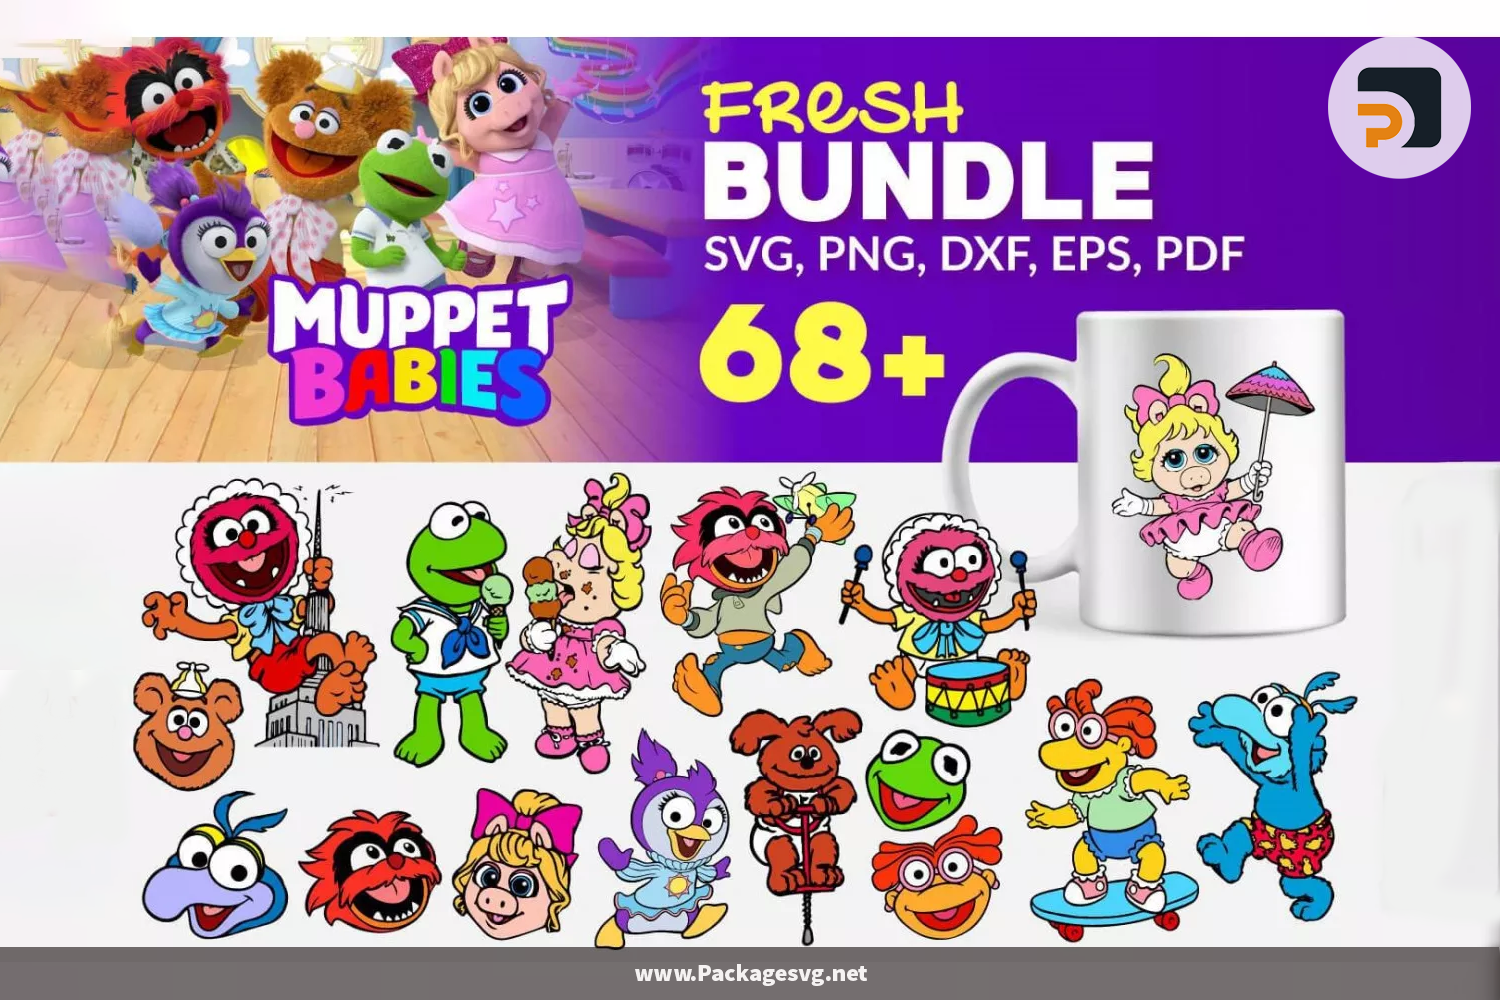 Muppet Babies SVG Bundle